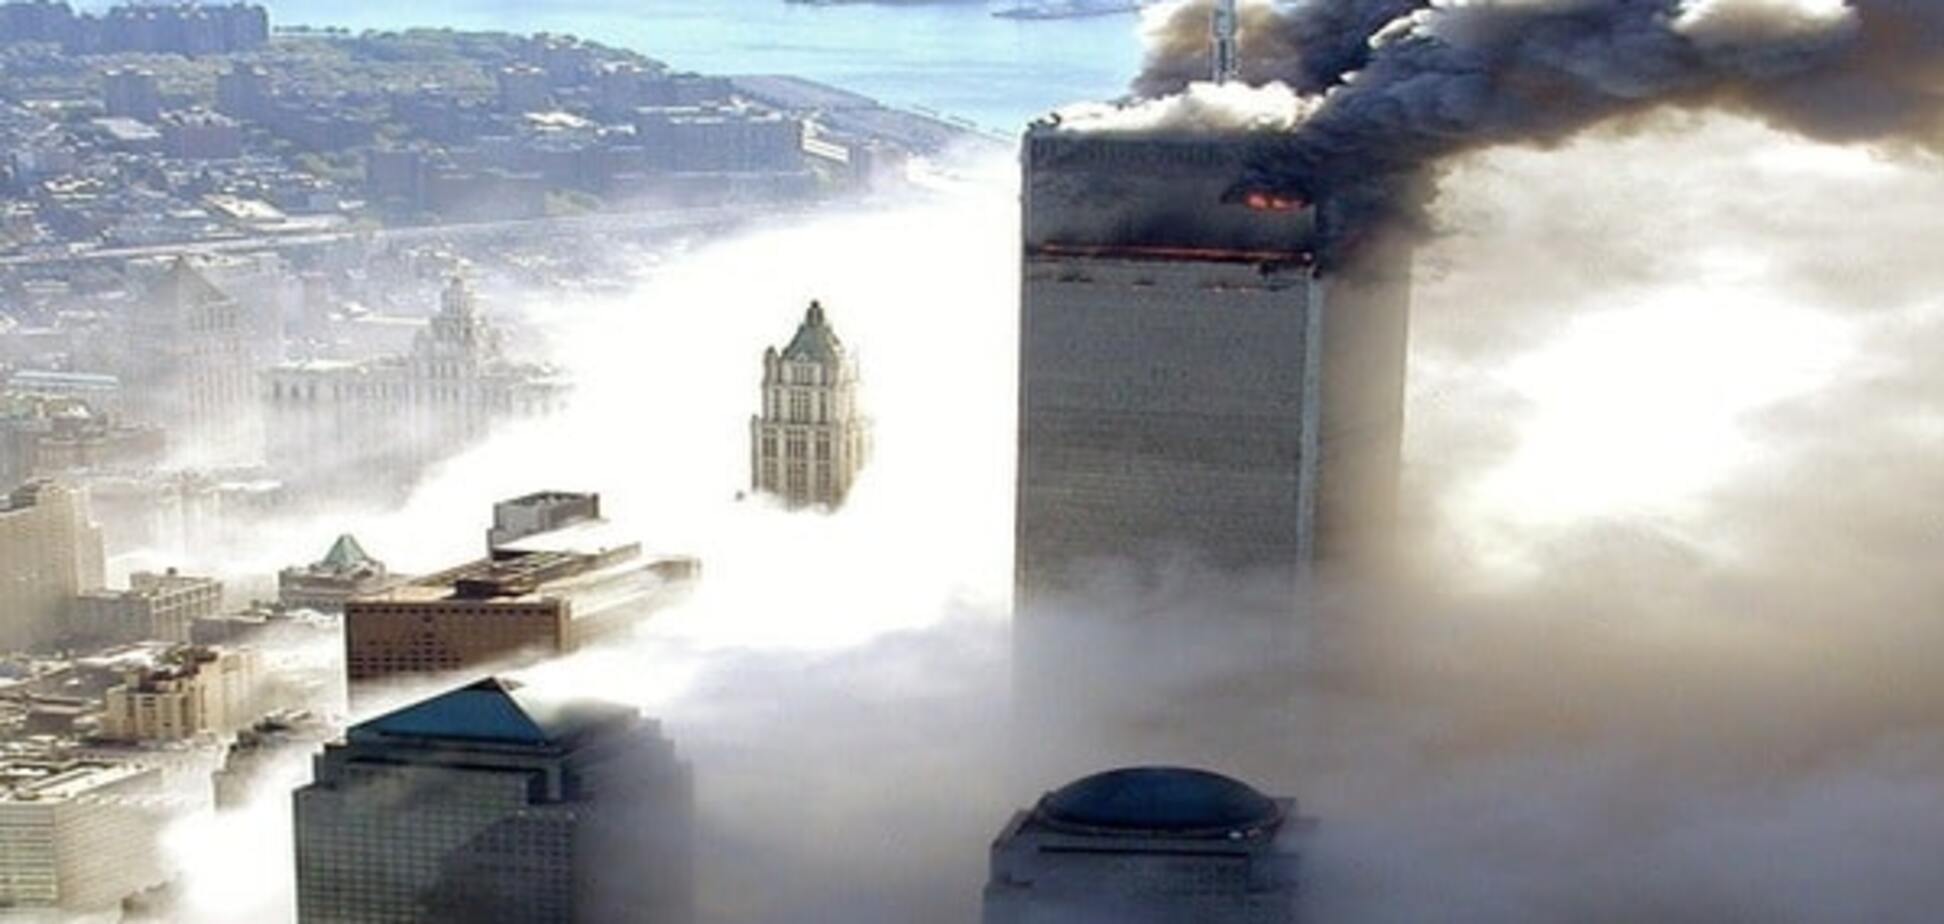 15 років від дня жаху: світ згадує теракти 11 вересня